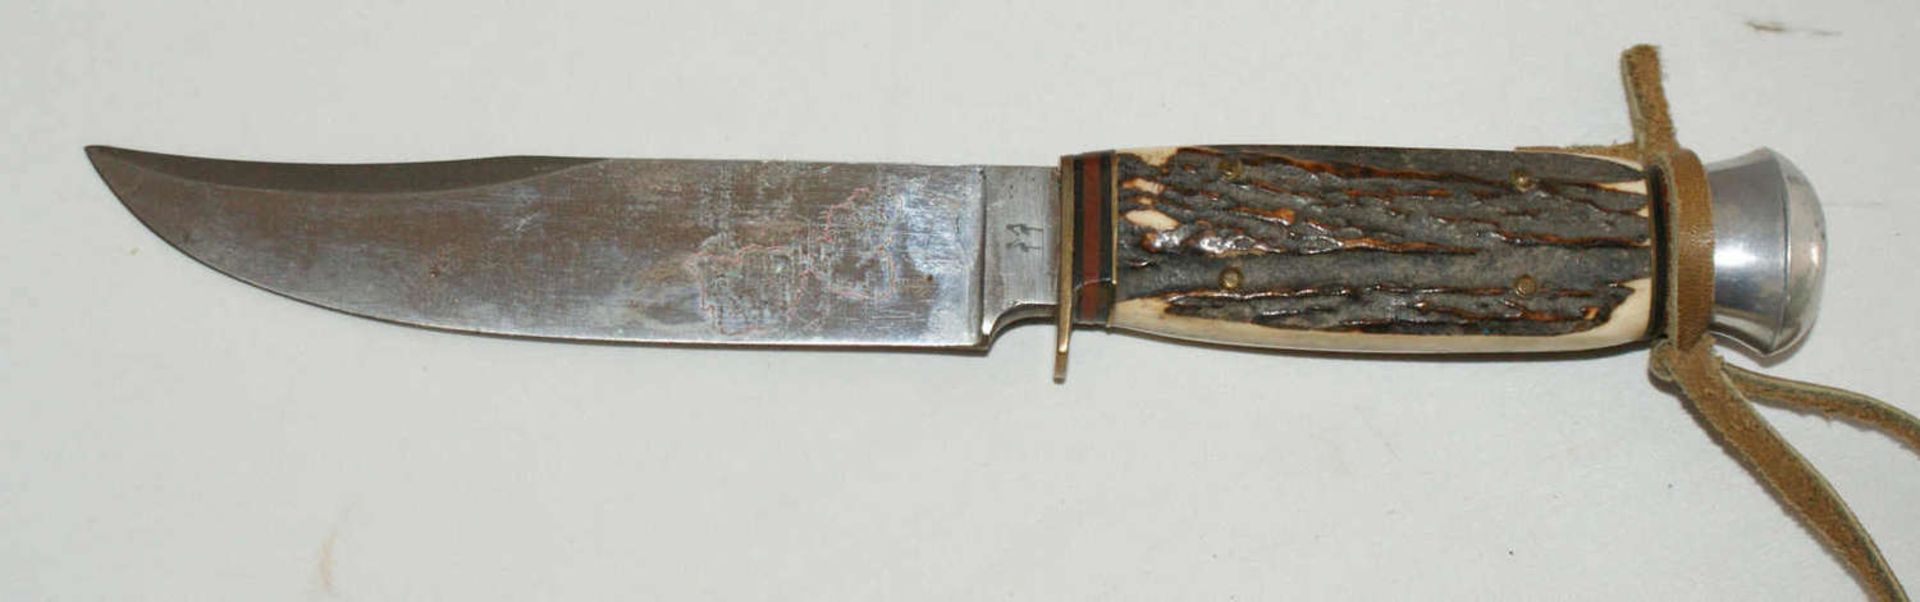 Fa. Robert Klaas Solingen, Jagdmesser 2 Storchenpunze mit Hirschhorngriff.Gesamtlänge ca. 23 cm, - Bild 2 aus 4